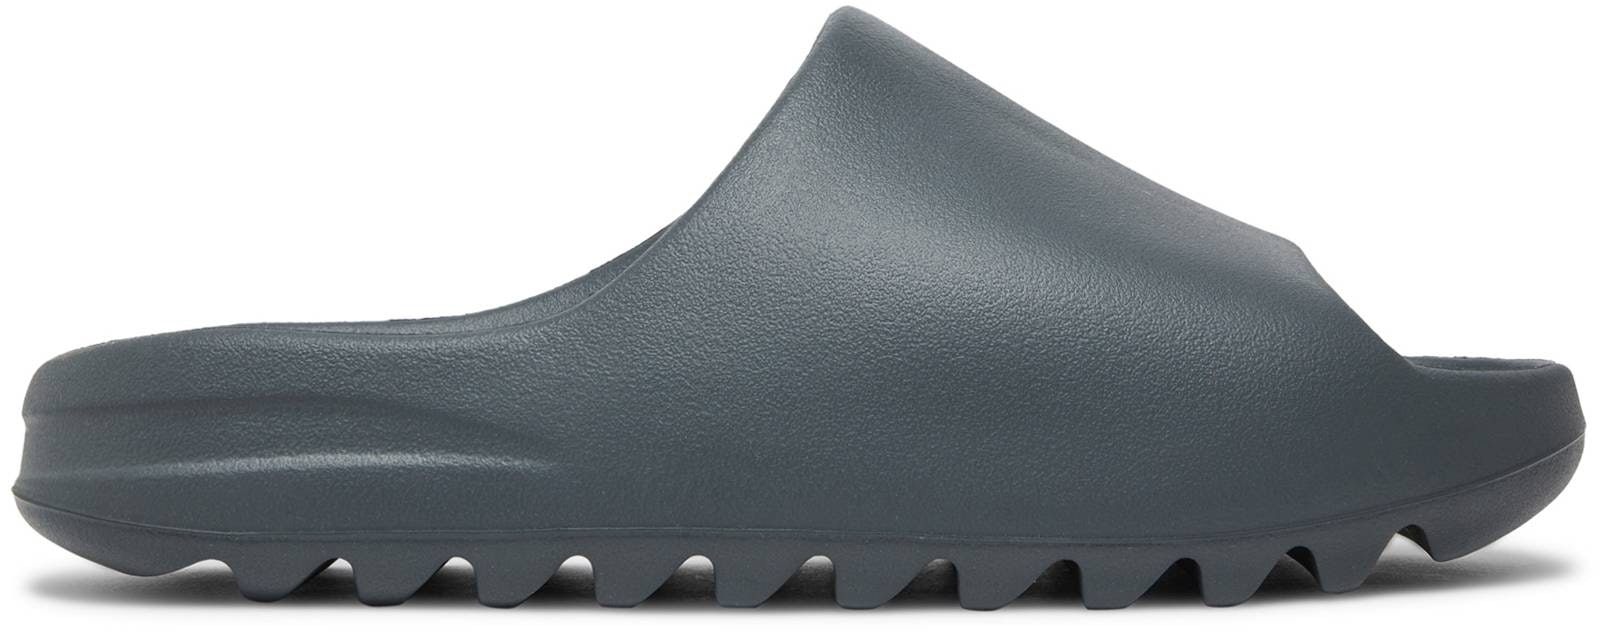 adidas Yeezy Slides 'Slate Grey' - ID2350 - Novelship